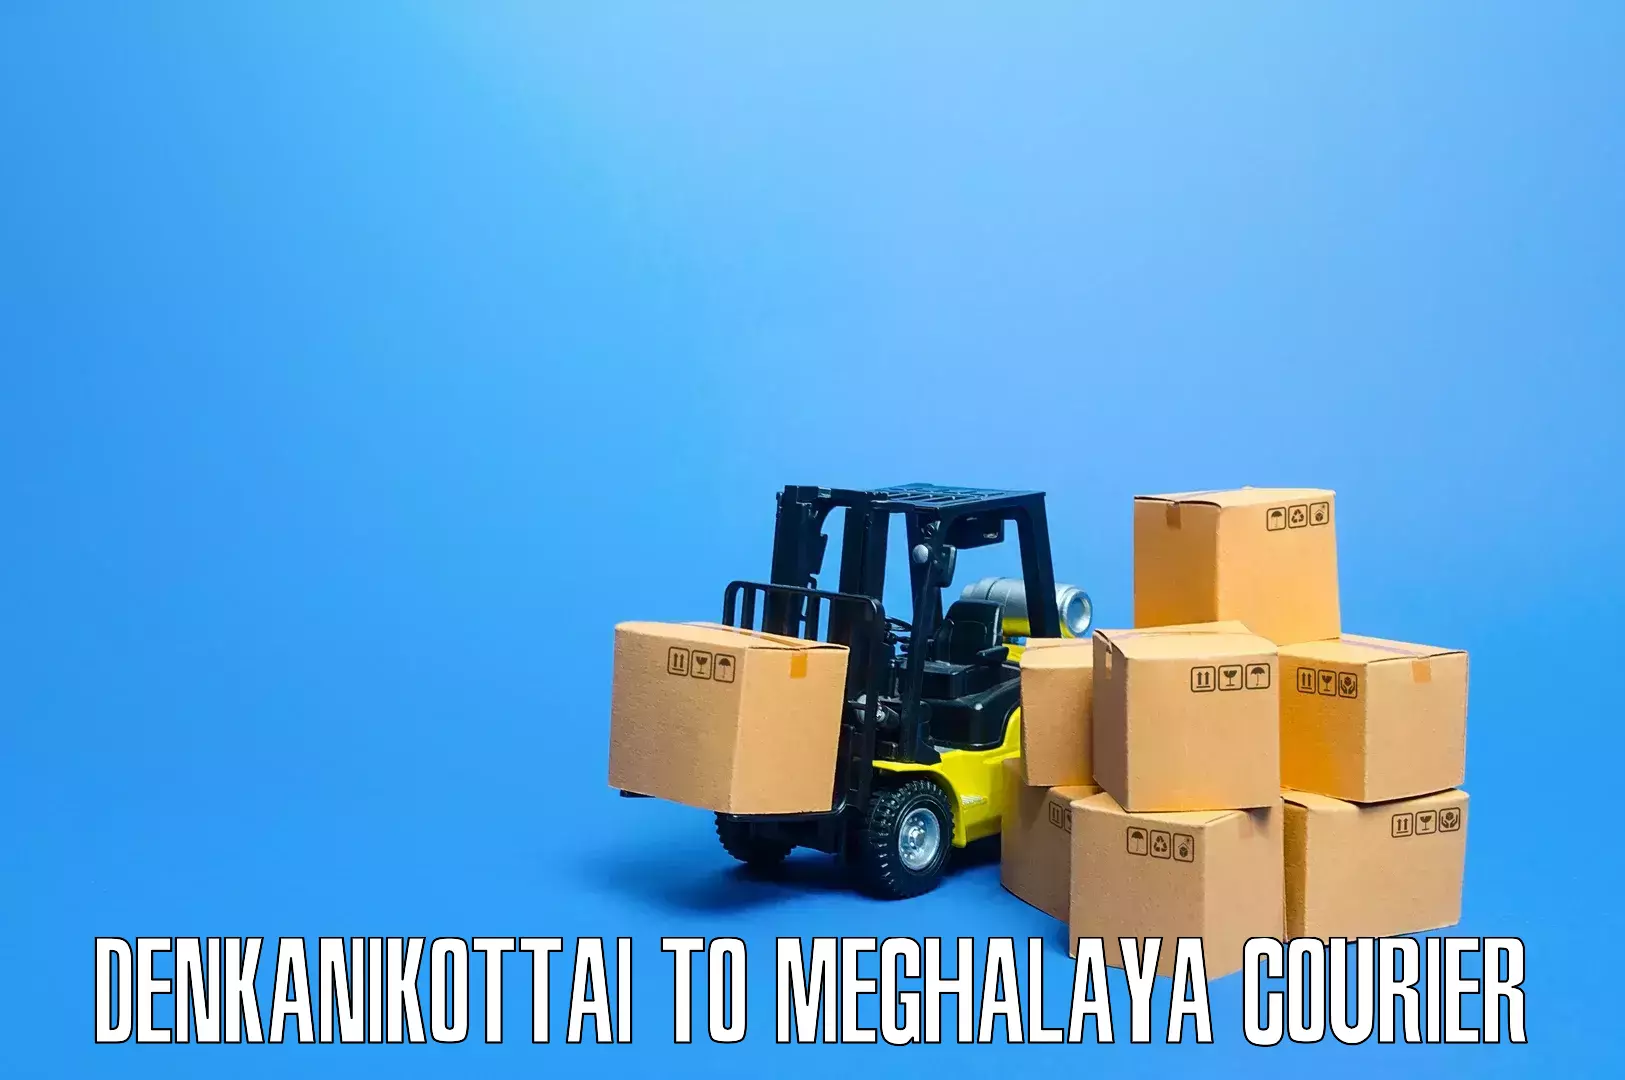 Household moving and storage Denkanikottai to Garobadha